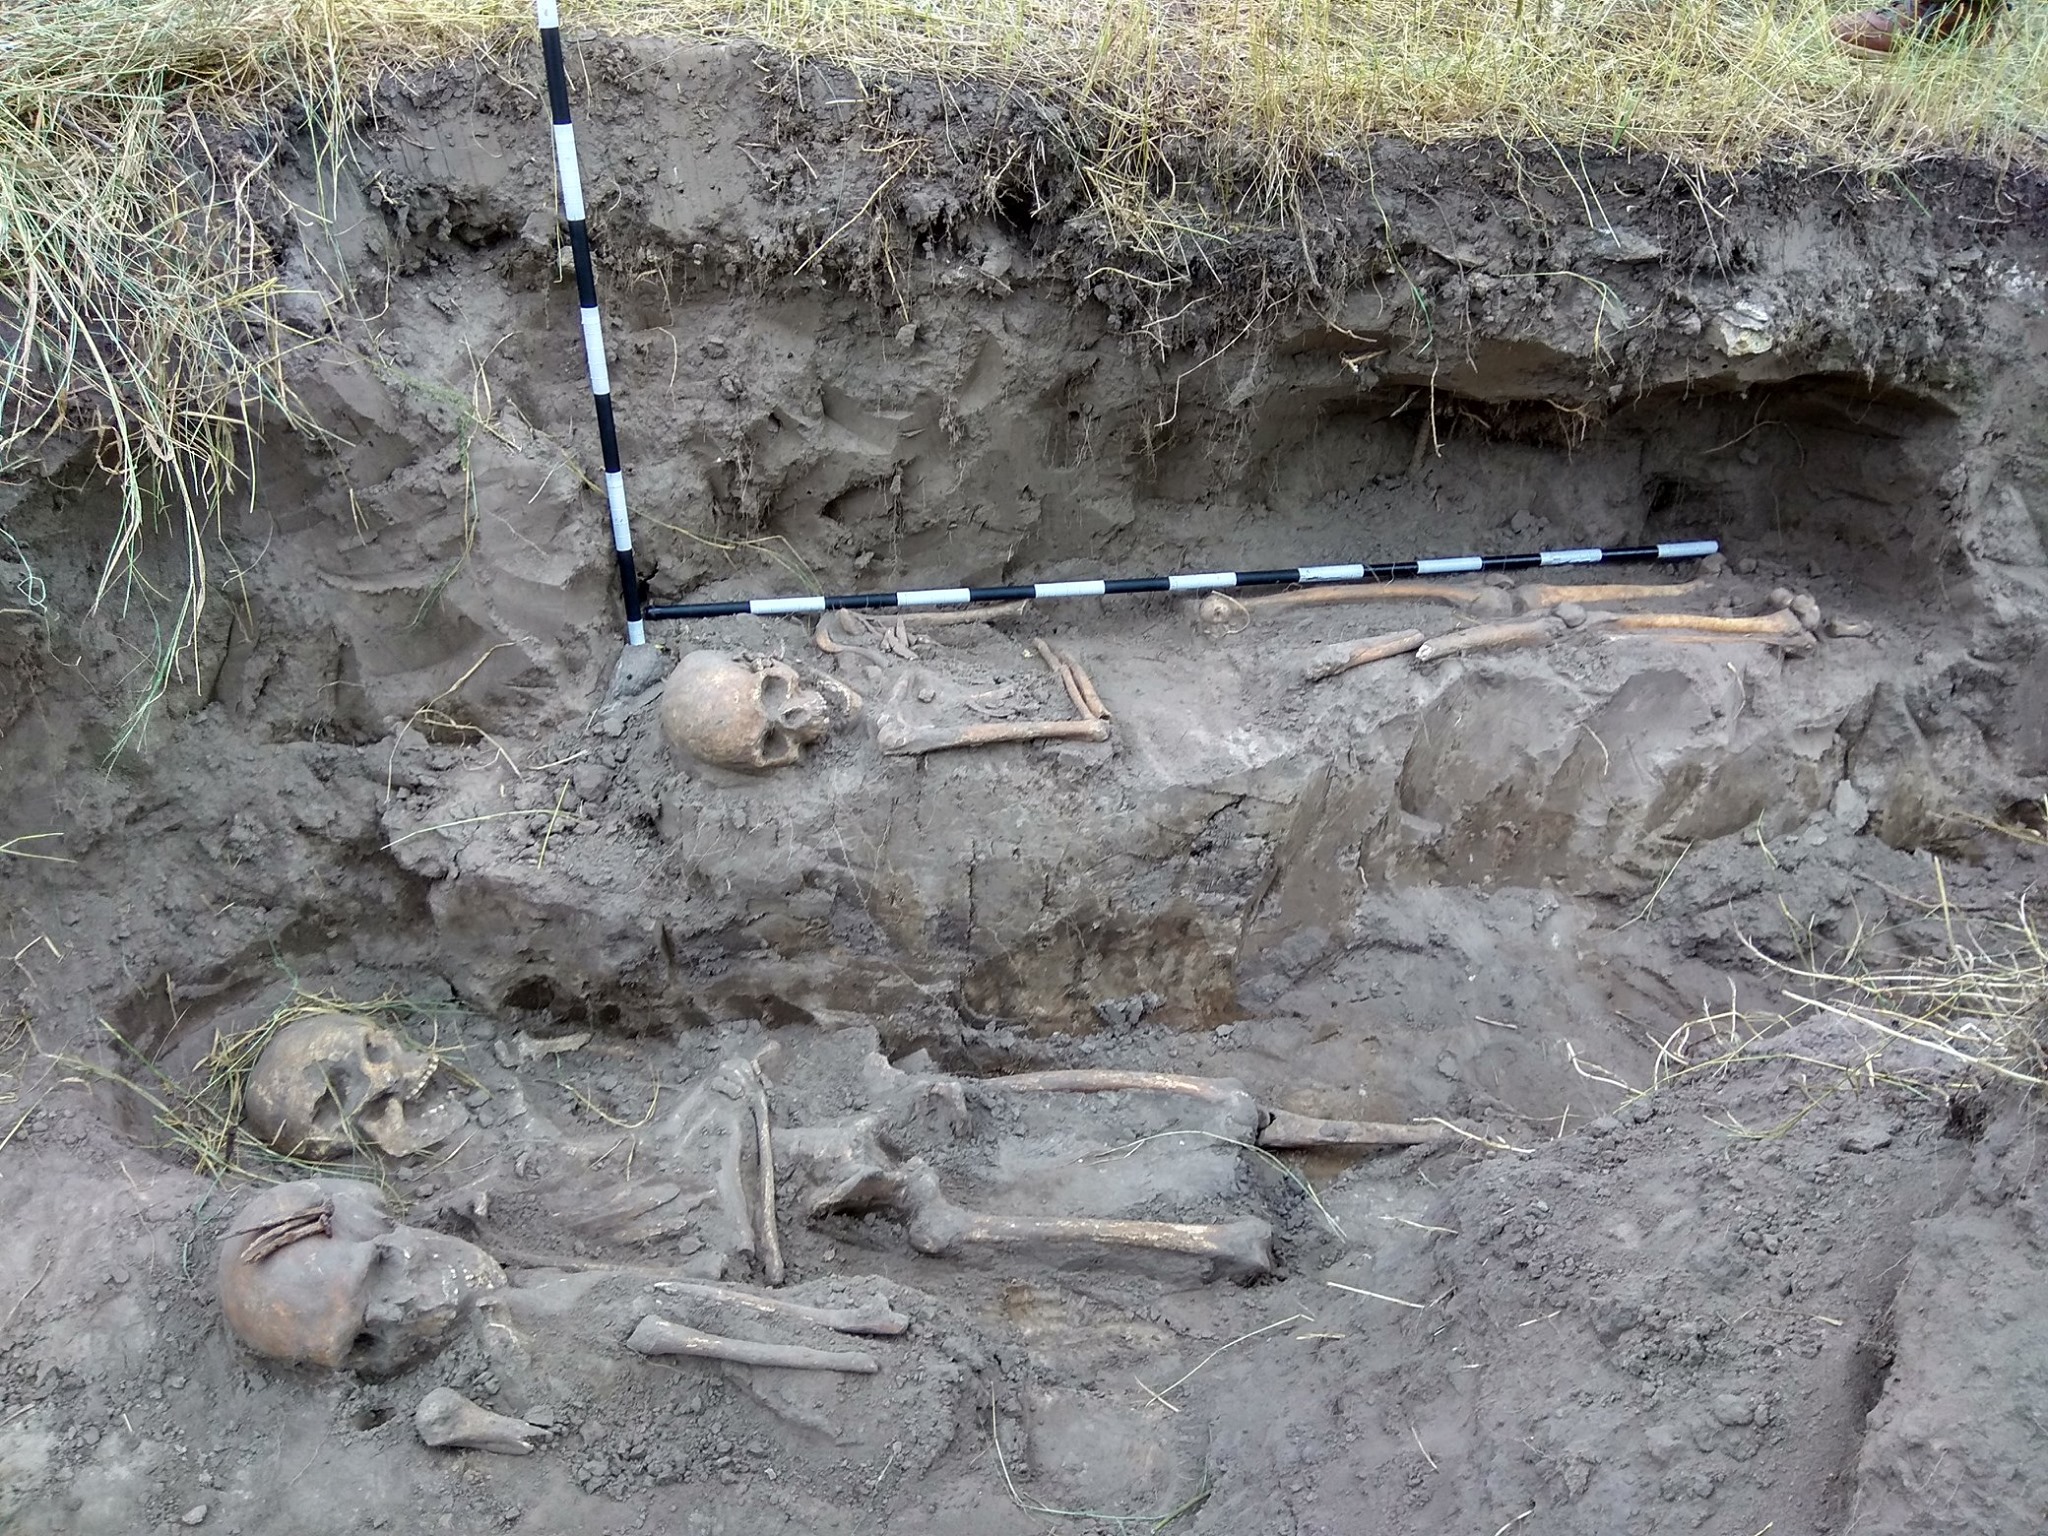 Mass graves of victims of communist regime found in Zhytomyr region (photos)